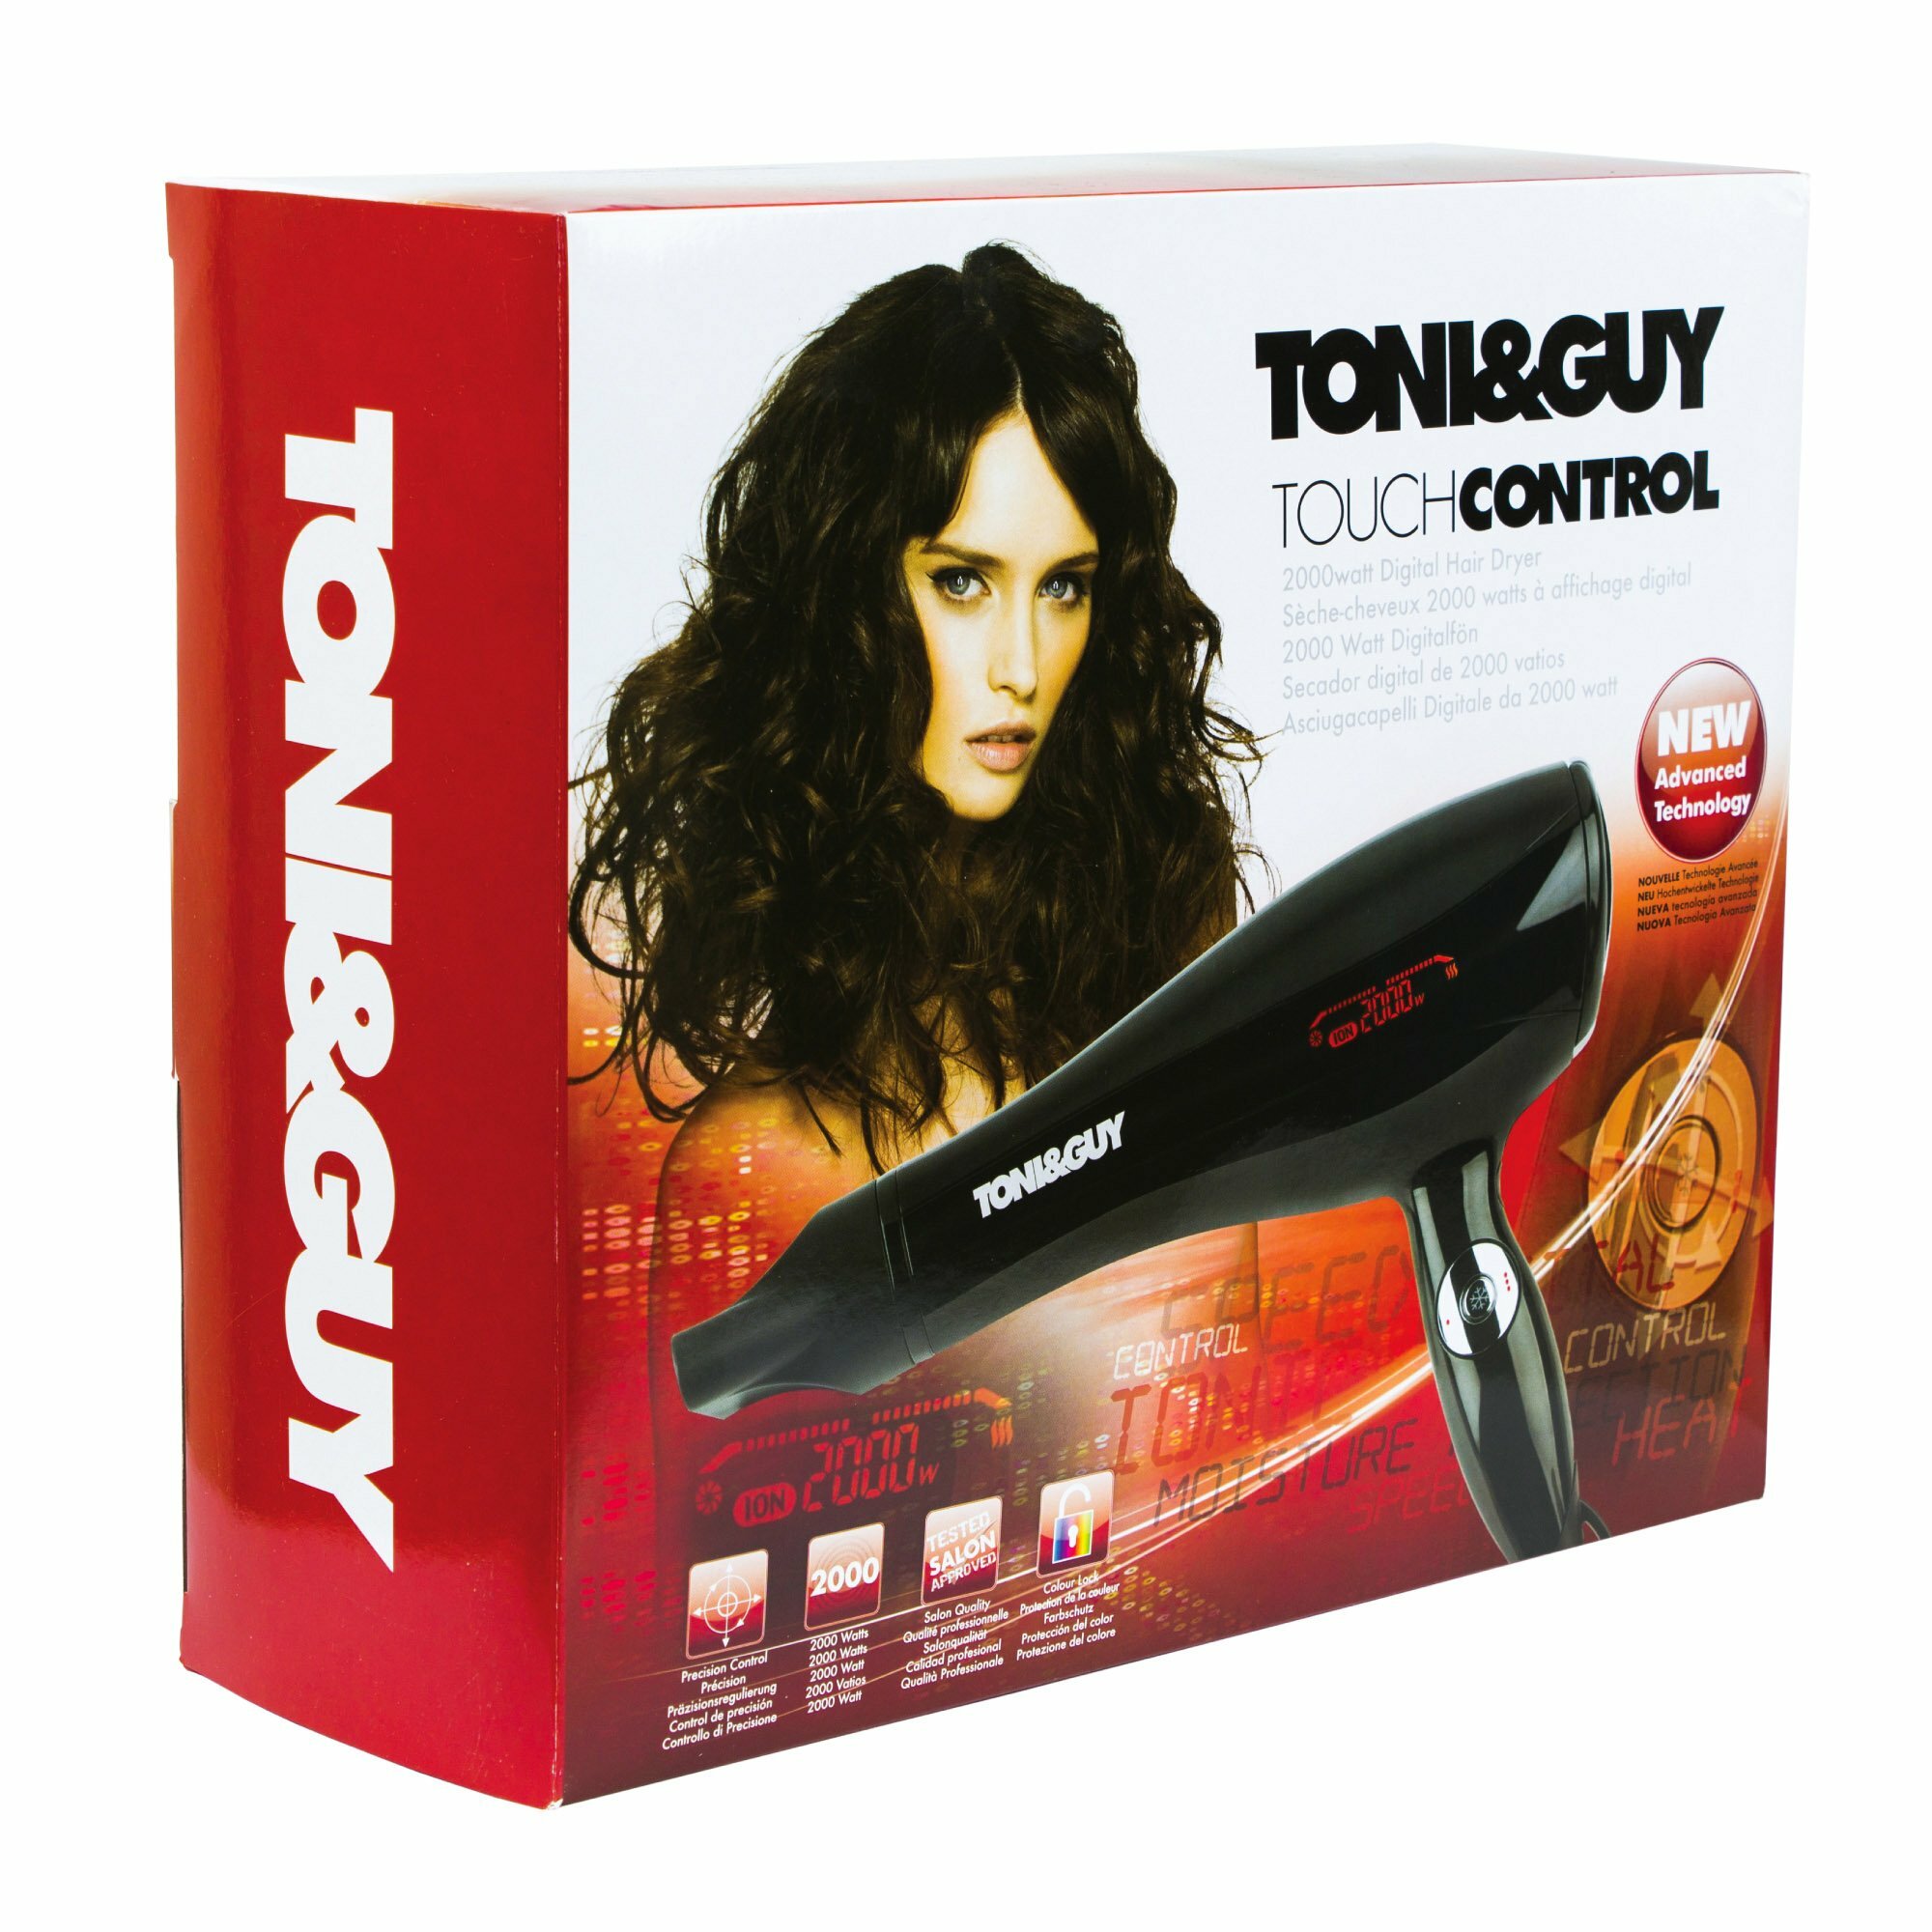 TONI&GUY TOUCH CONTROL GDR5356E, Profesionálny fén na vlasy s ionizáciou